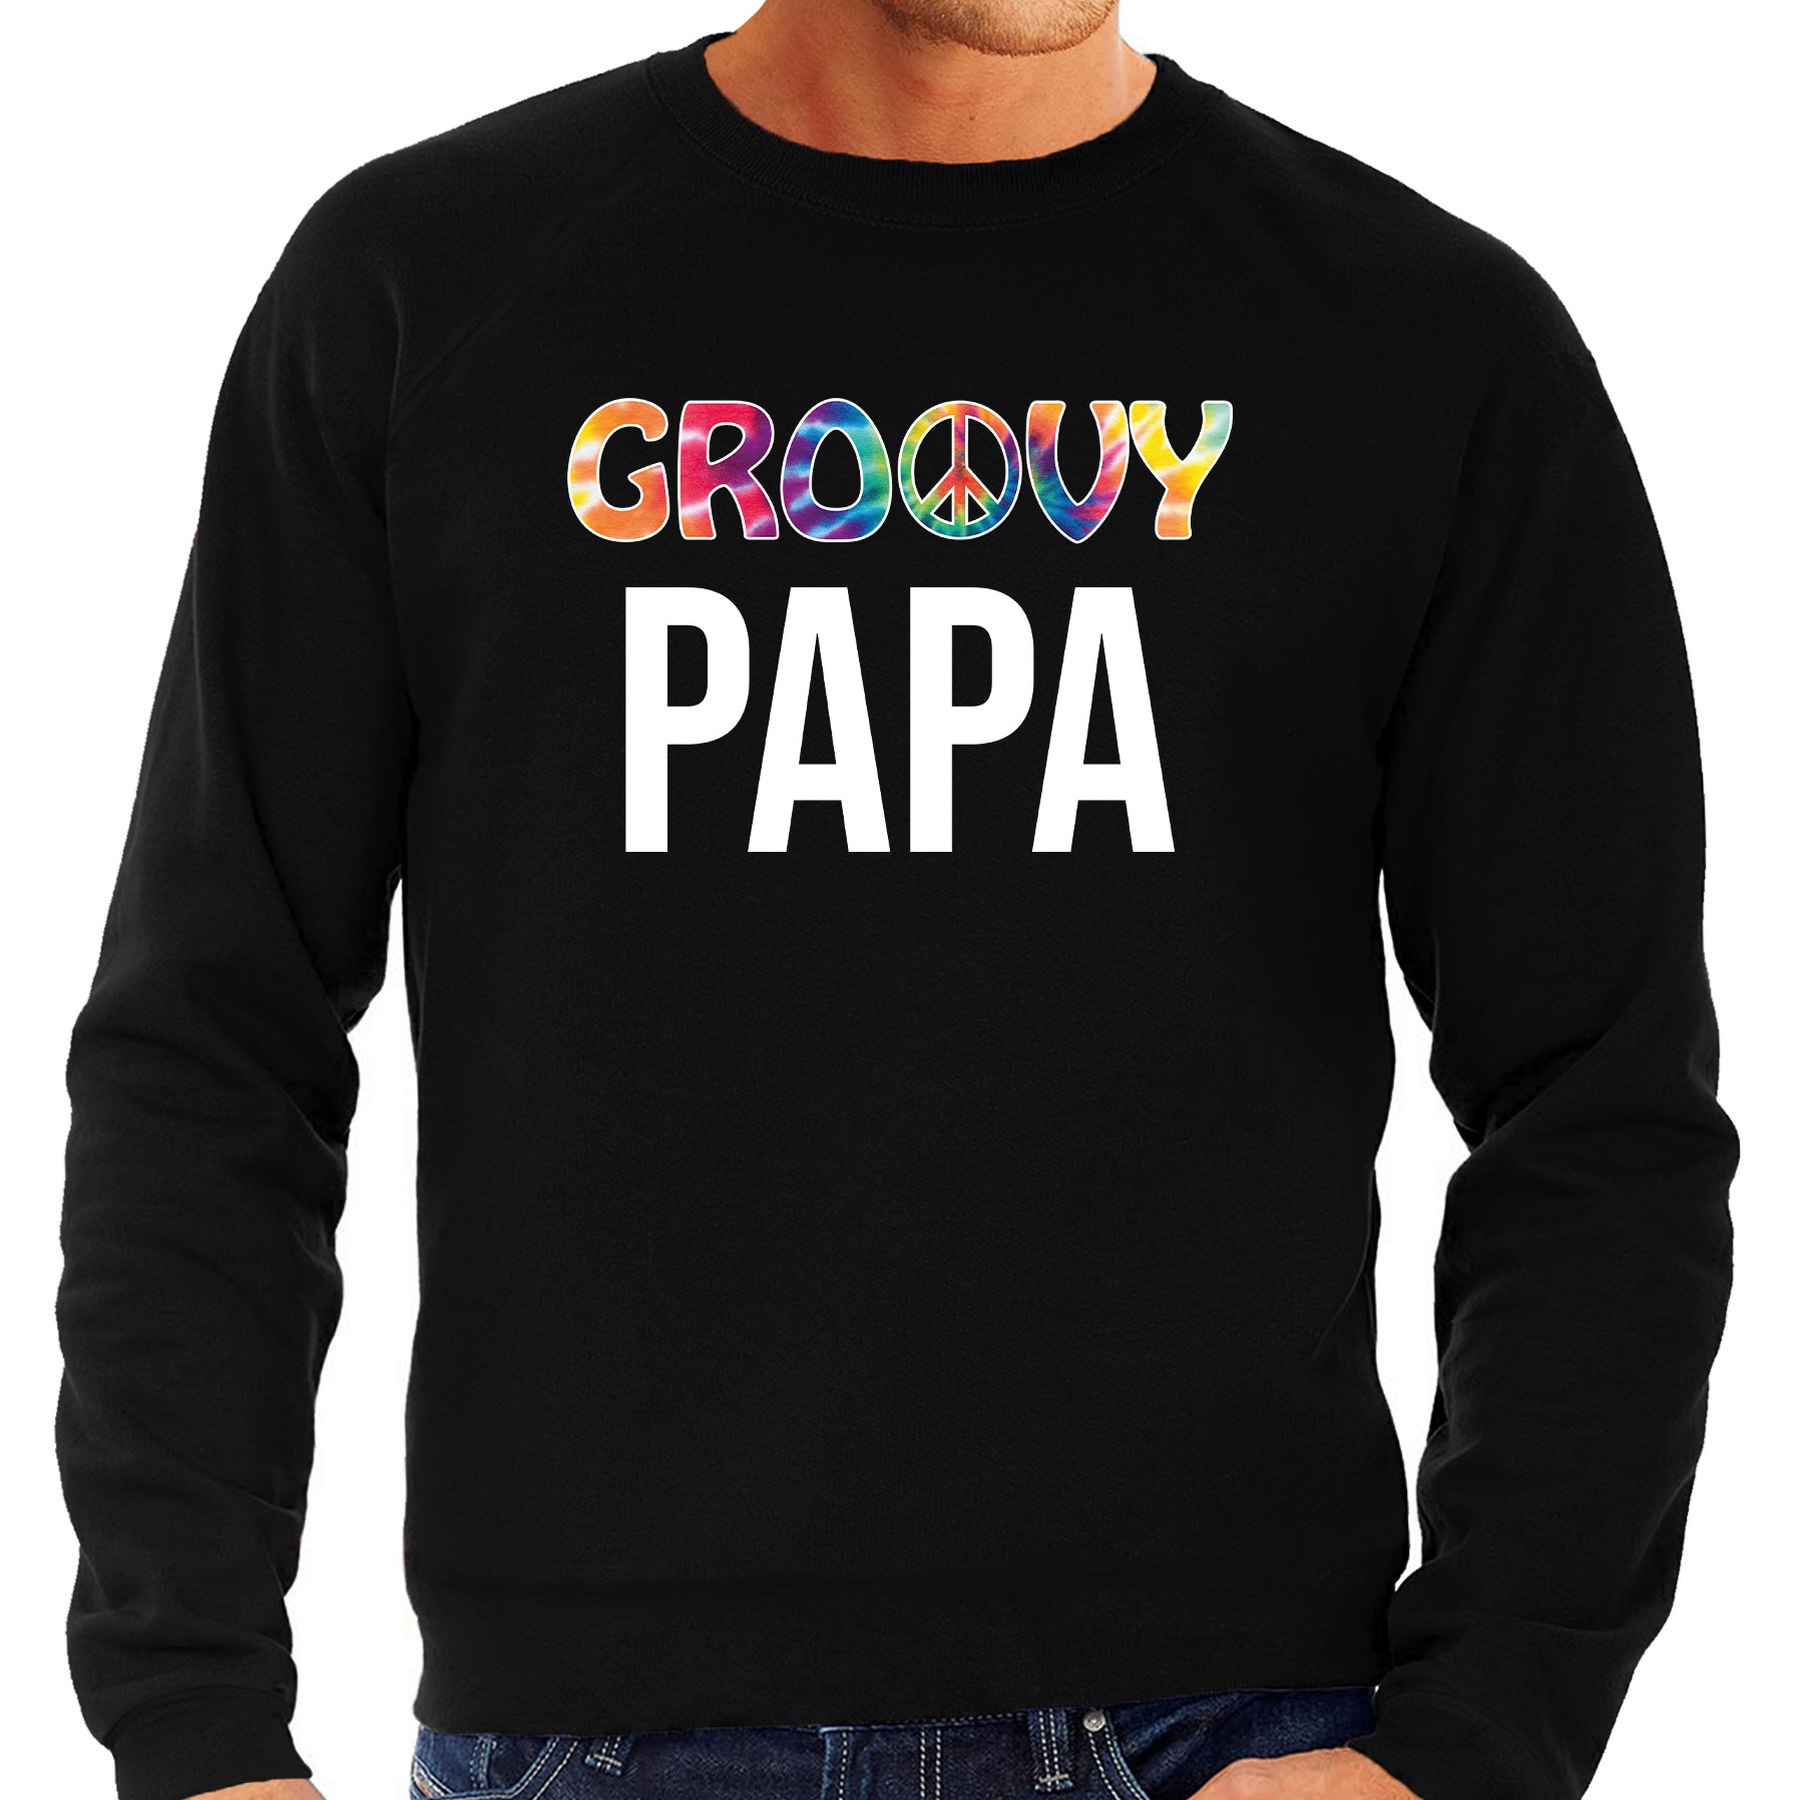 Groovy papa sweater / trui zwart voor heren - vaderdag cadeau truien papa